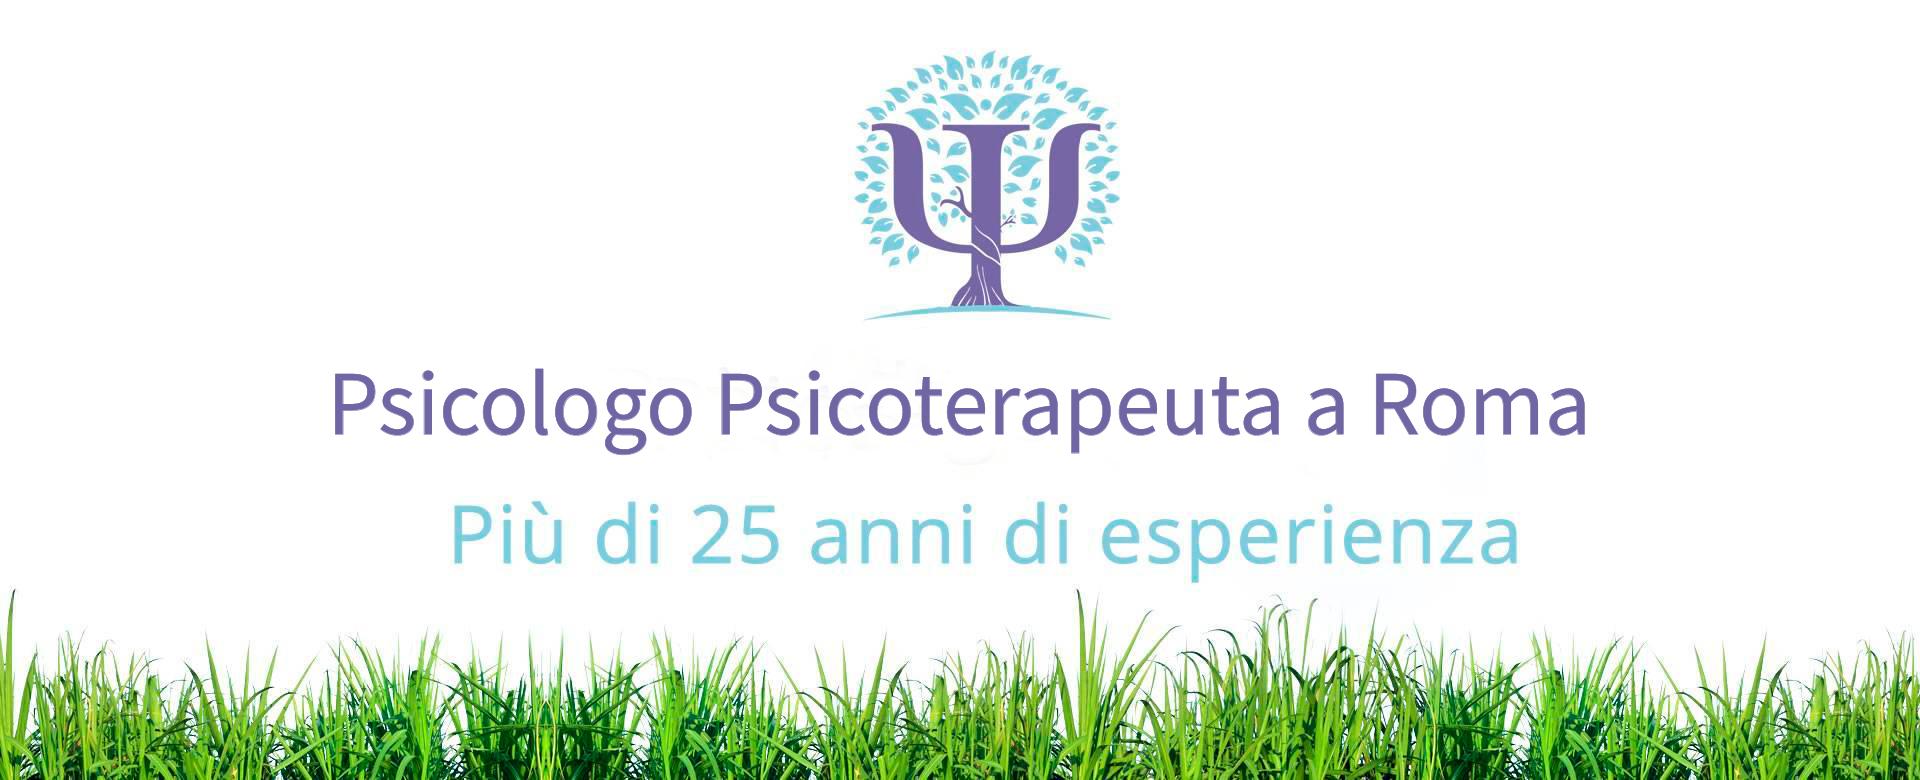 psicologo_psicoterapeuta-roma